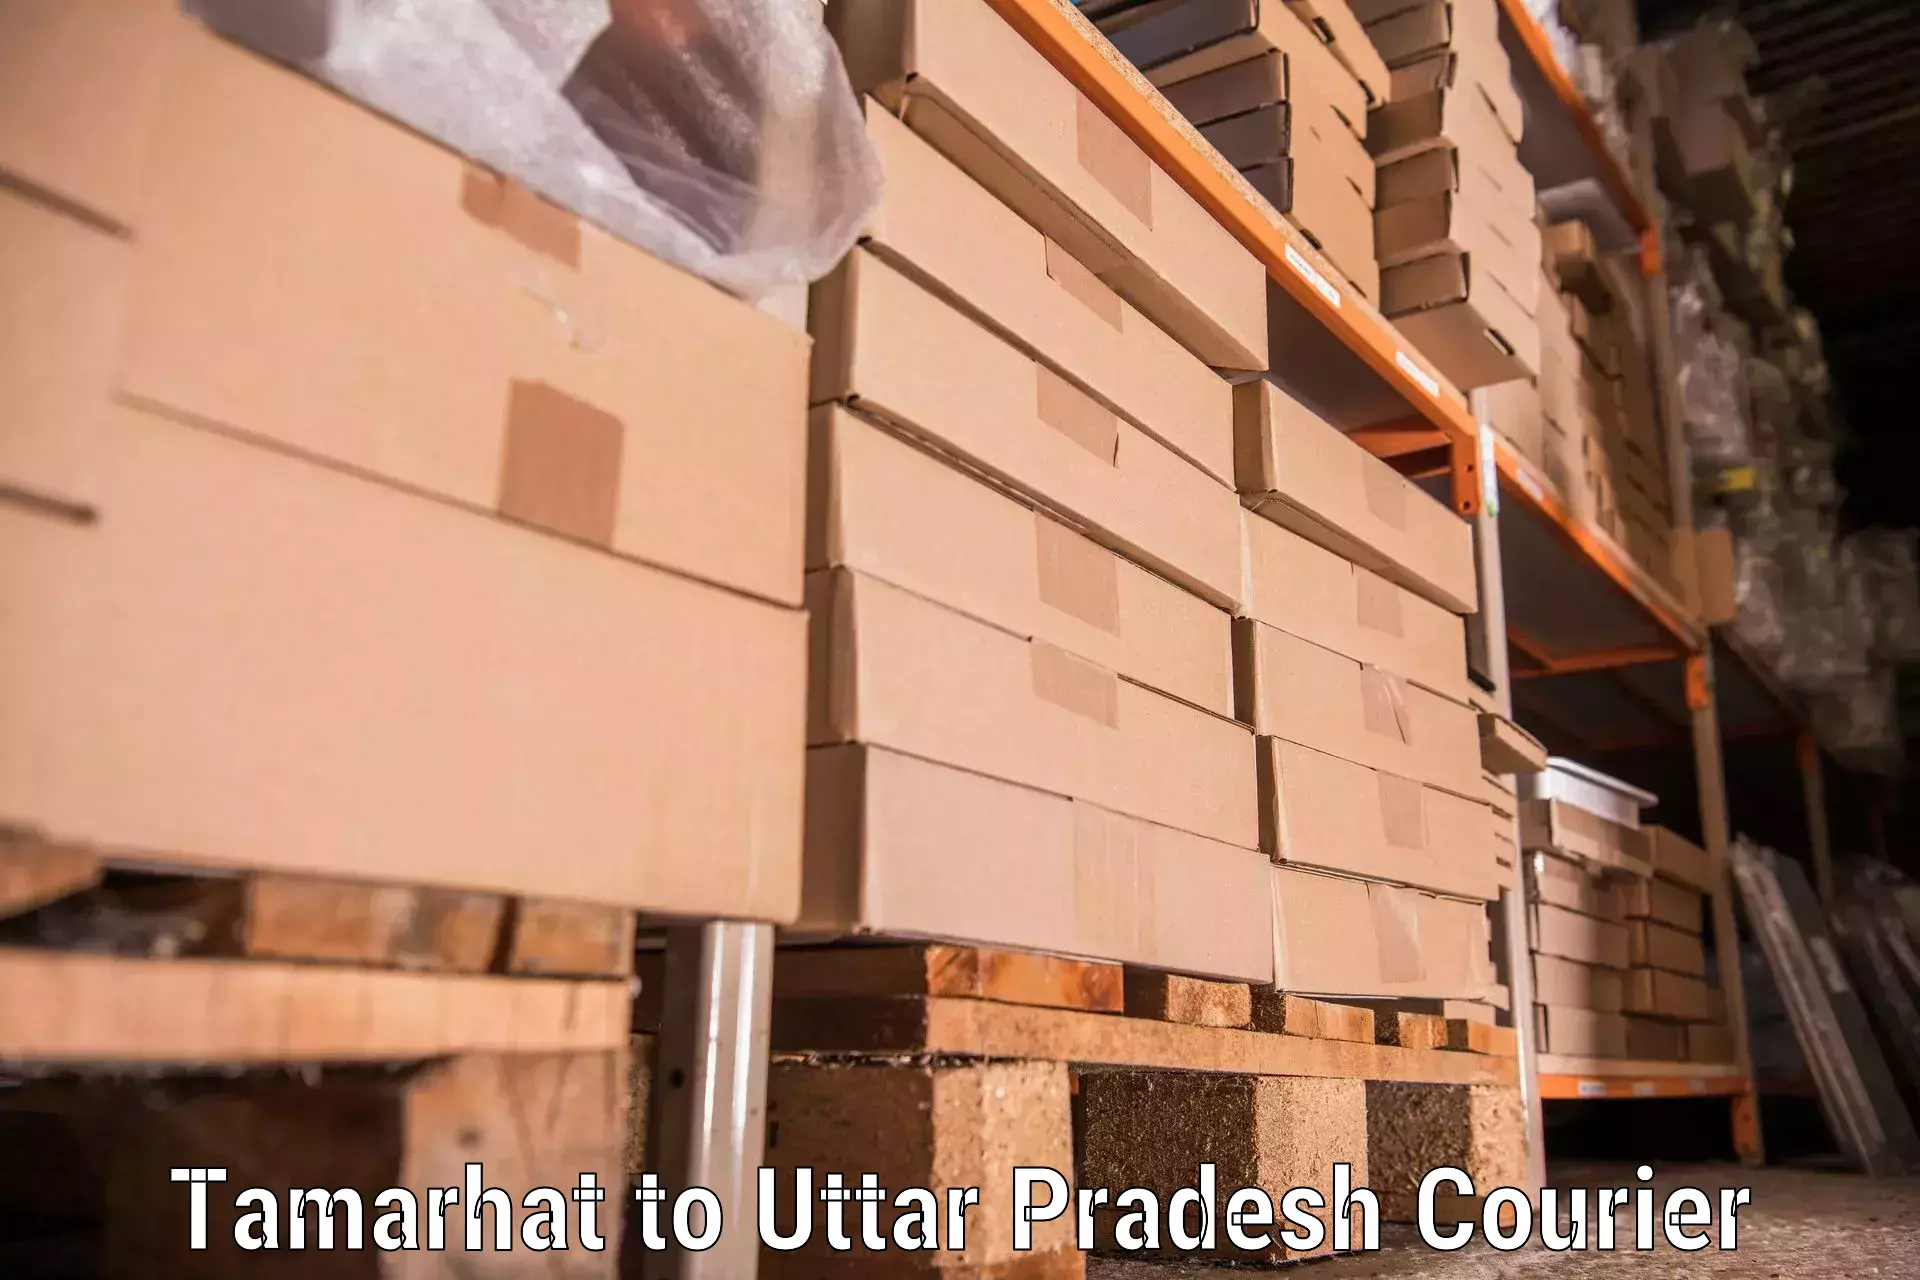 Quality moving company Tamarhat to Uttar Pradesh